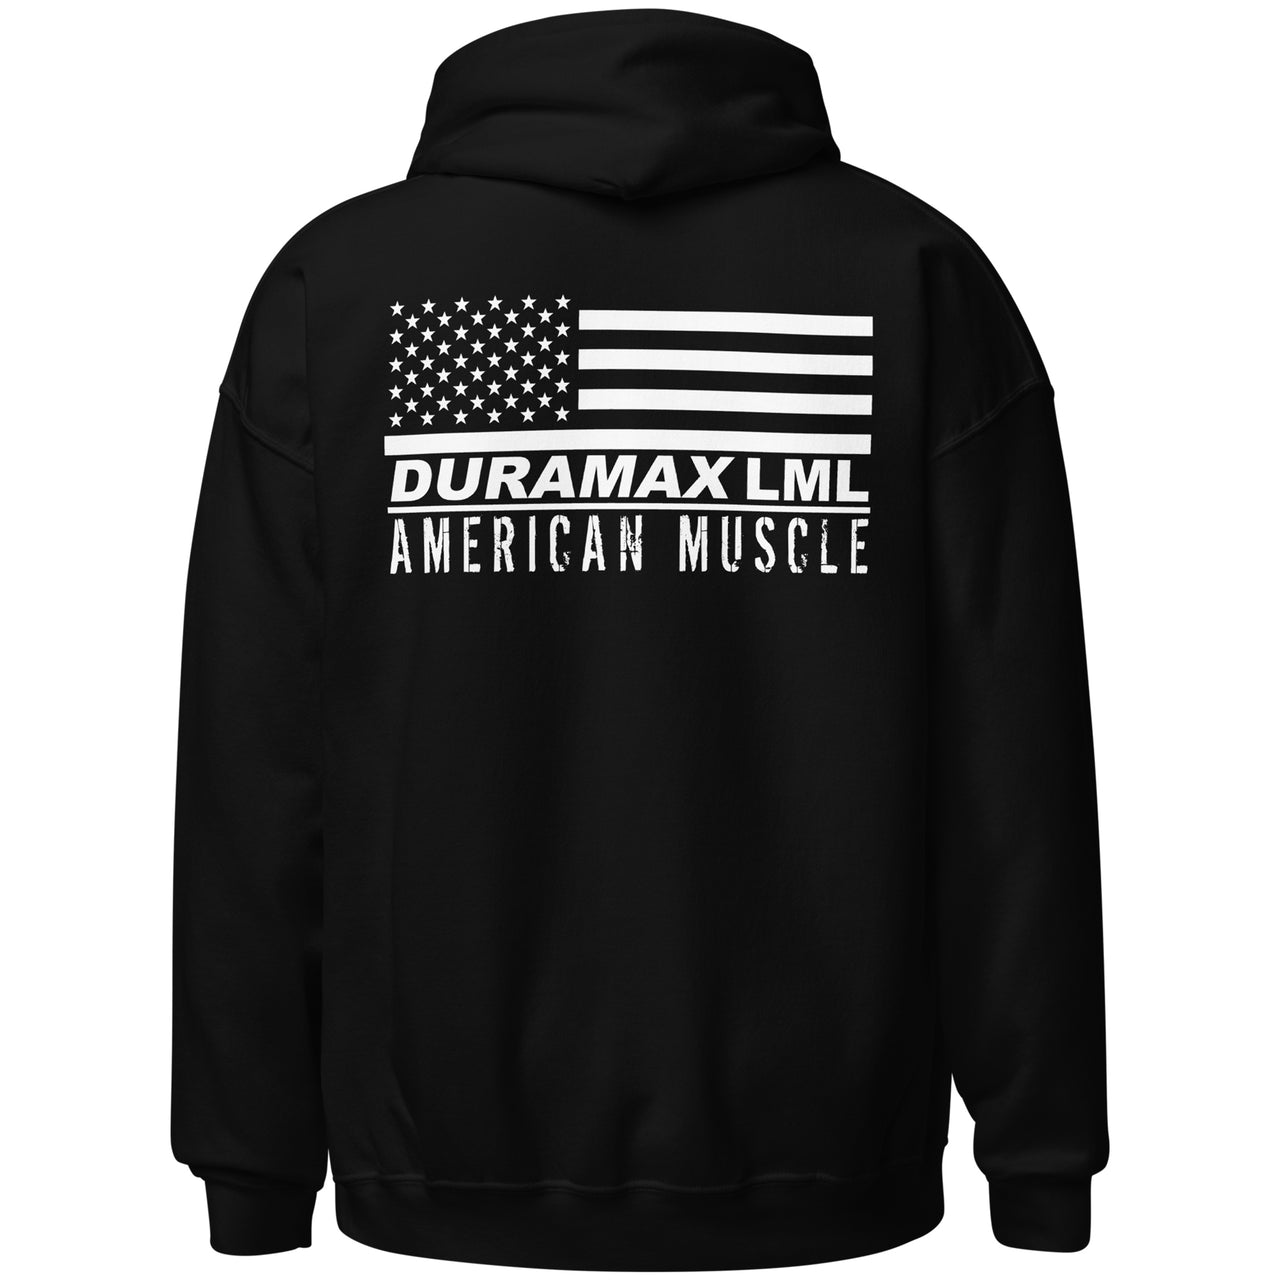 LML Duramax Hoodie, Diesel Truck American Flag Sweatshirt